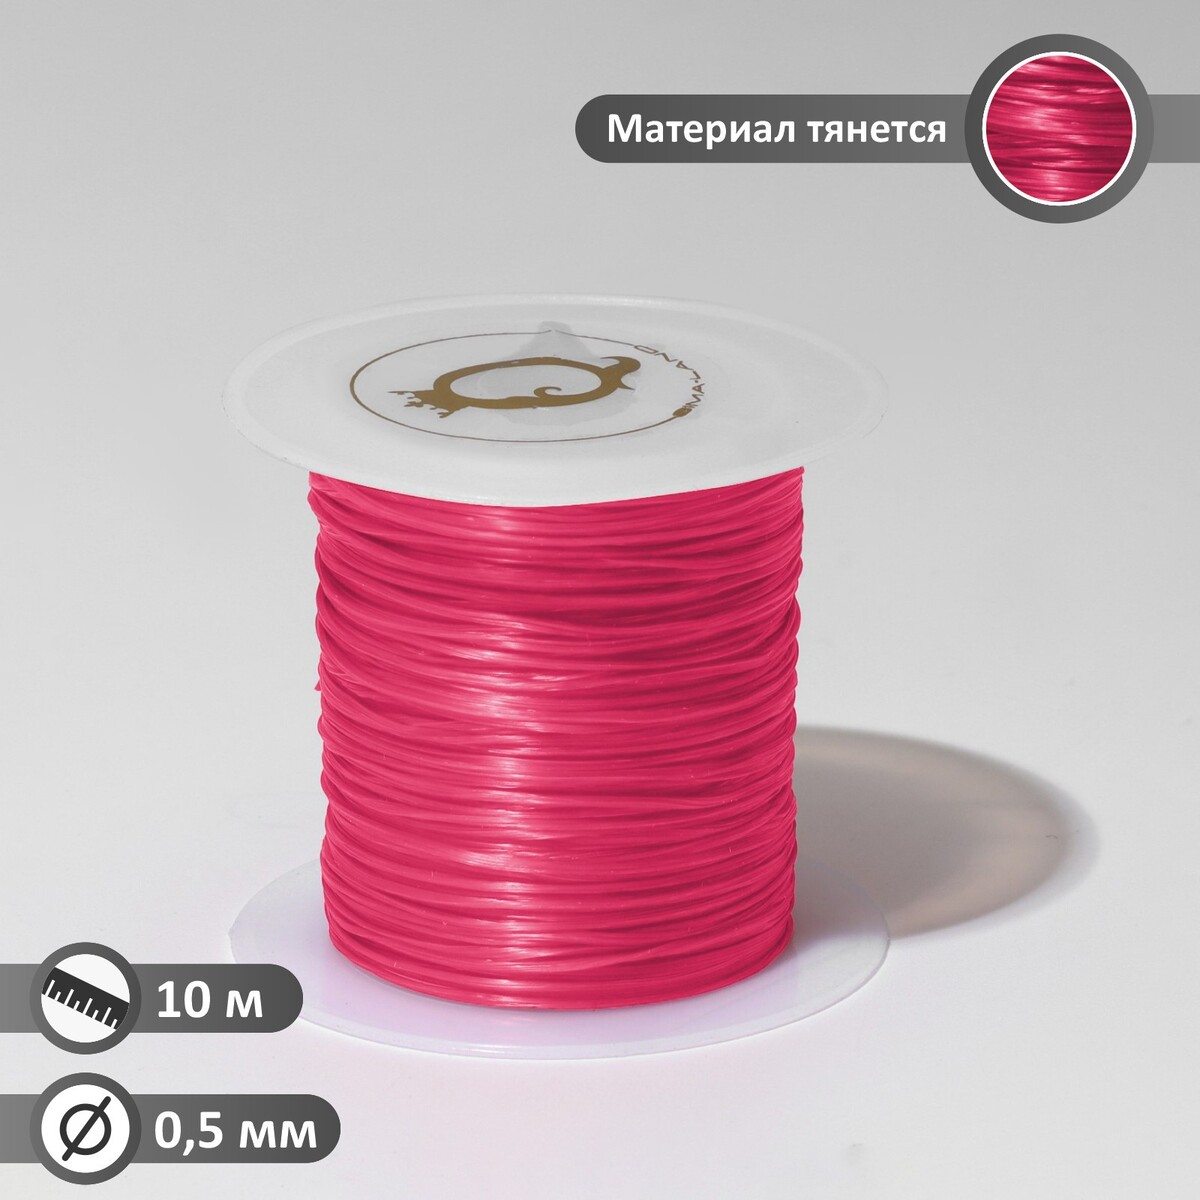 Нить силиконовая (резинка) d=0,5 мм, l=10 м (прочность 2250 денье), цвет розовый нить силиконовая резинка d 0 5 мм l 10 м прочность 2250 денье неоновый желтый